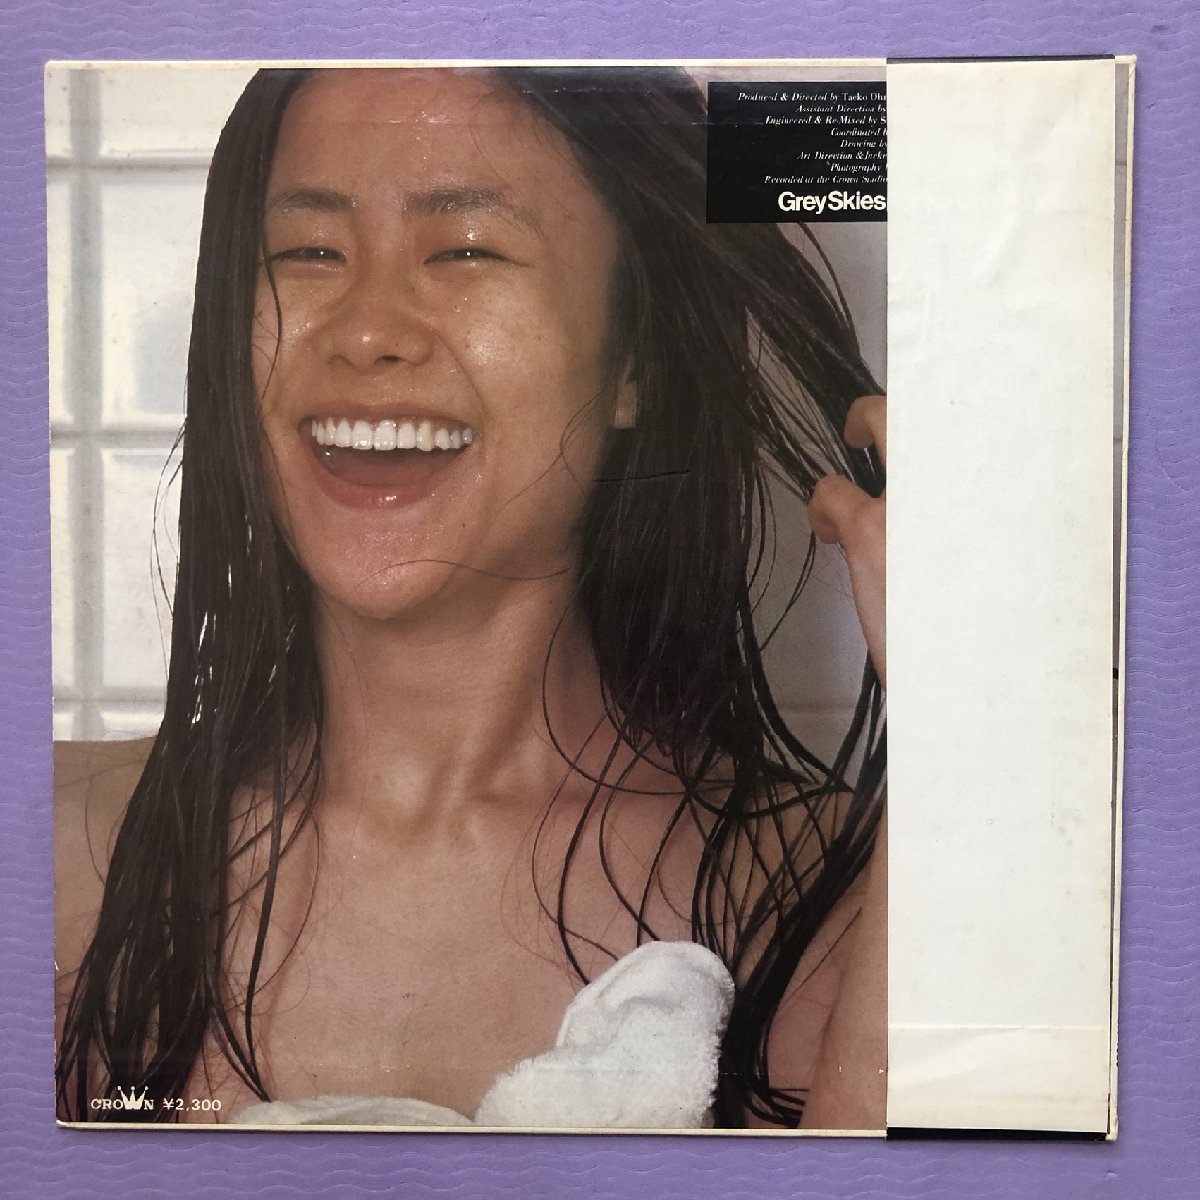  good record 1976 year original Release record Oonuki Taeko Taeko Ohnuki LP record gray * Sky zGrey Skies name record with belt Yamashita Tatsuro Sakamoto Ryuichi Hosono Haruomi 